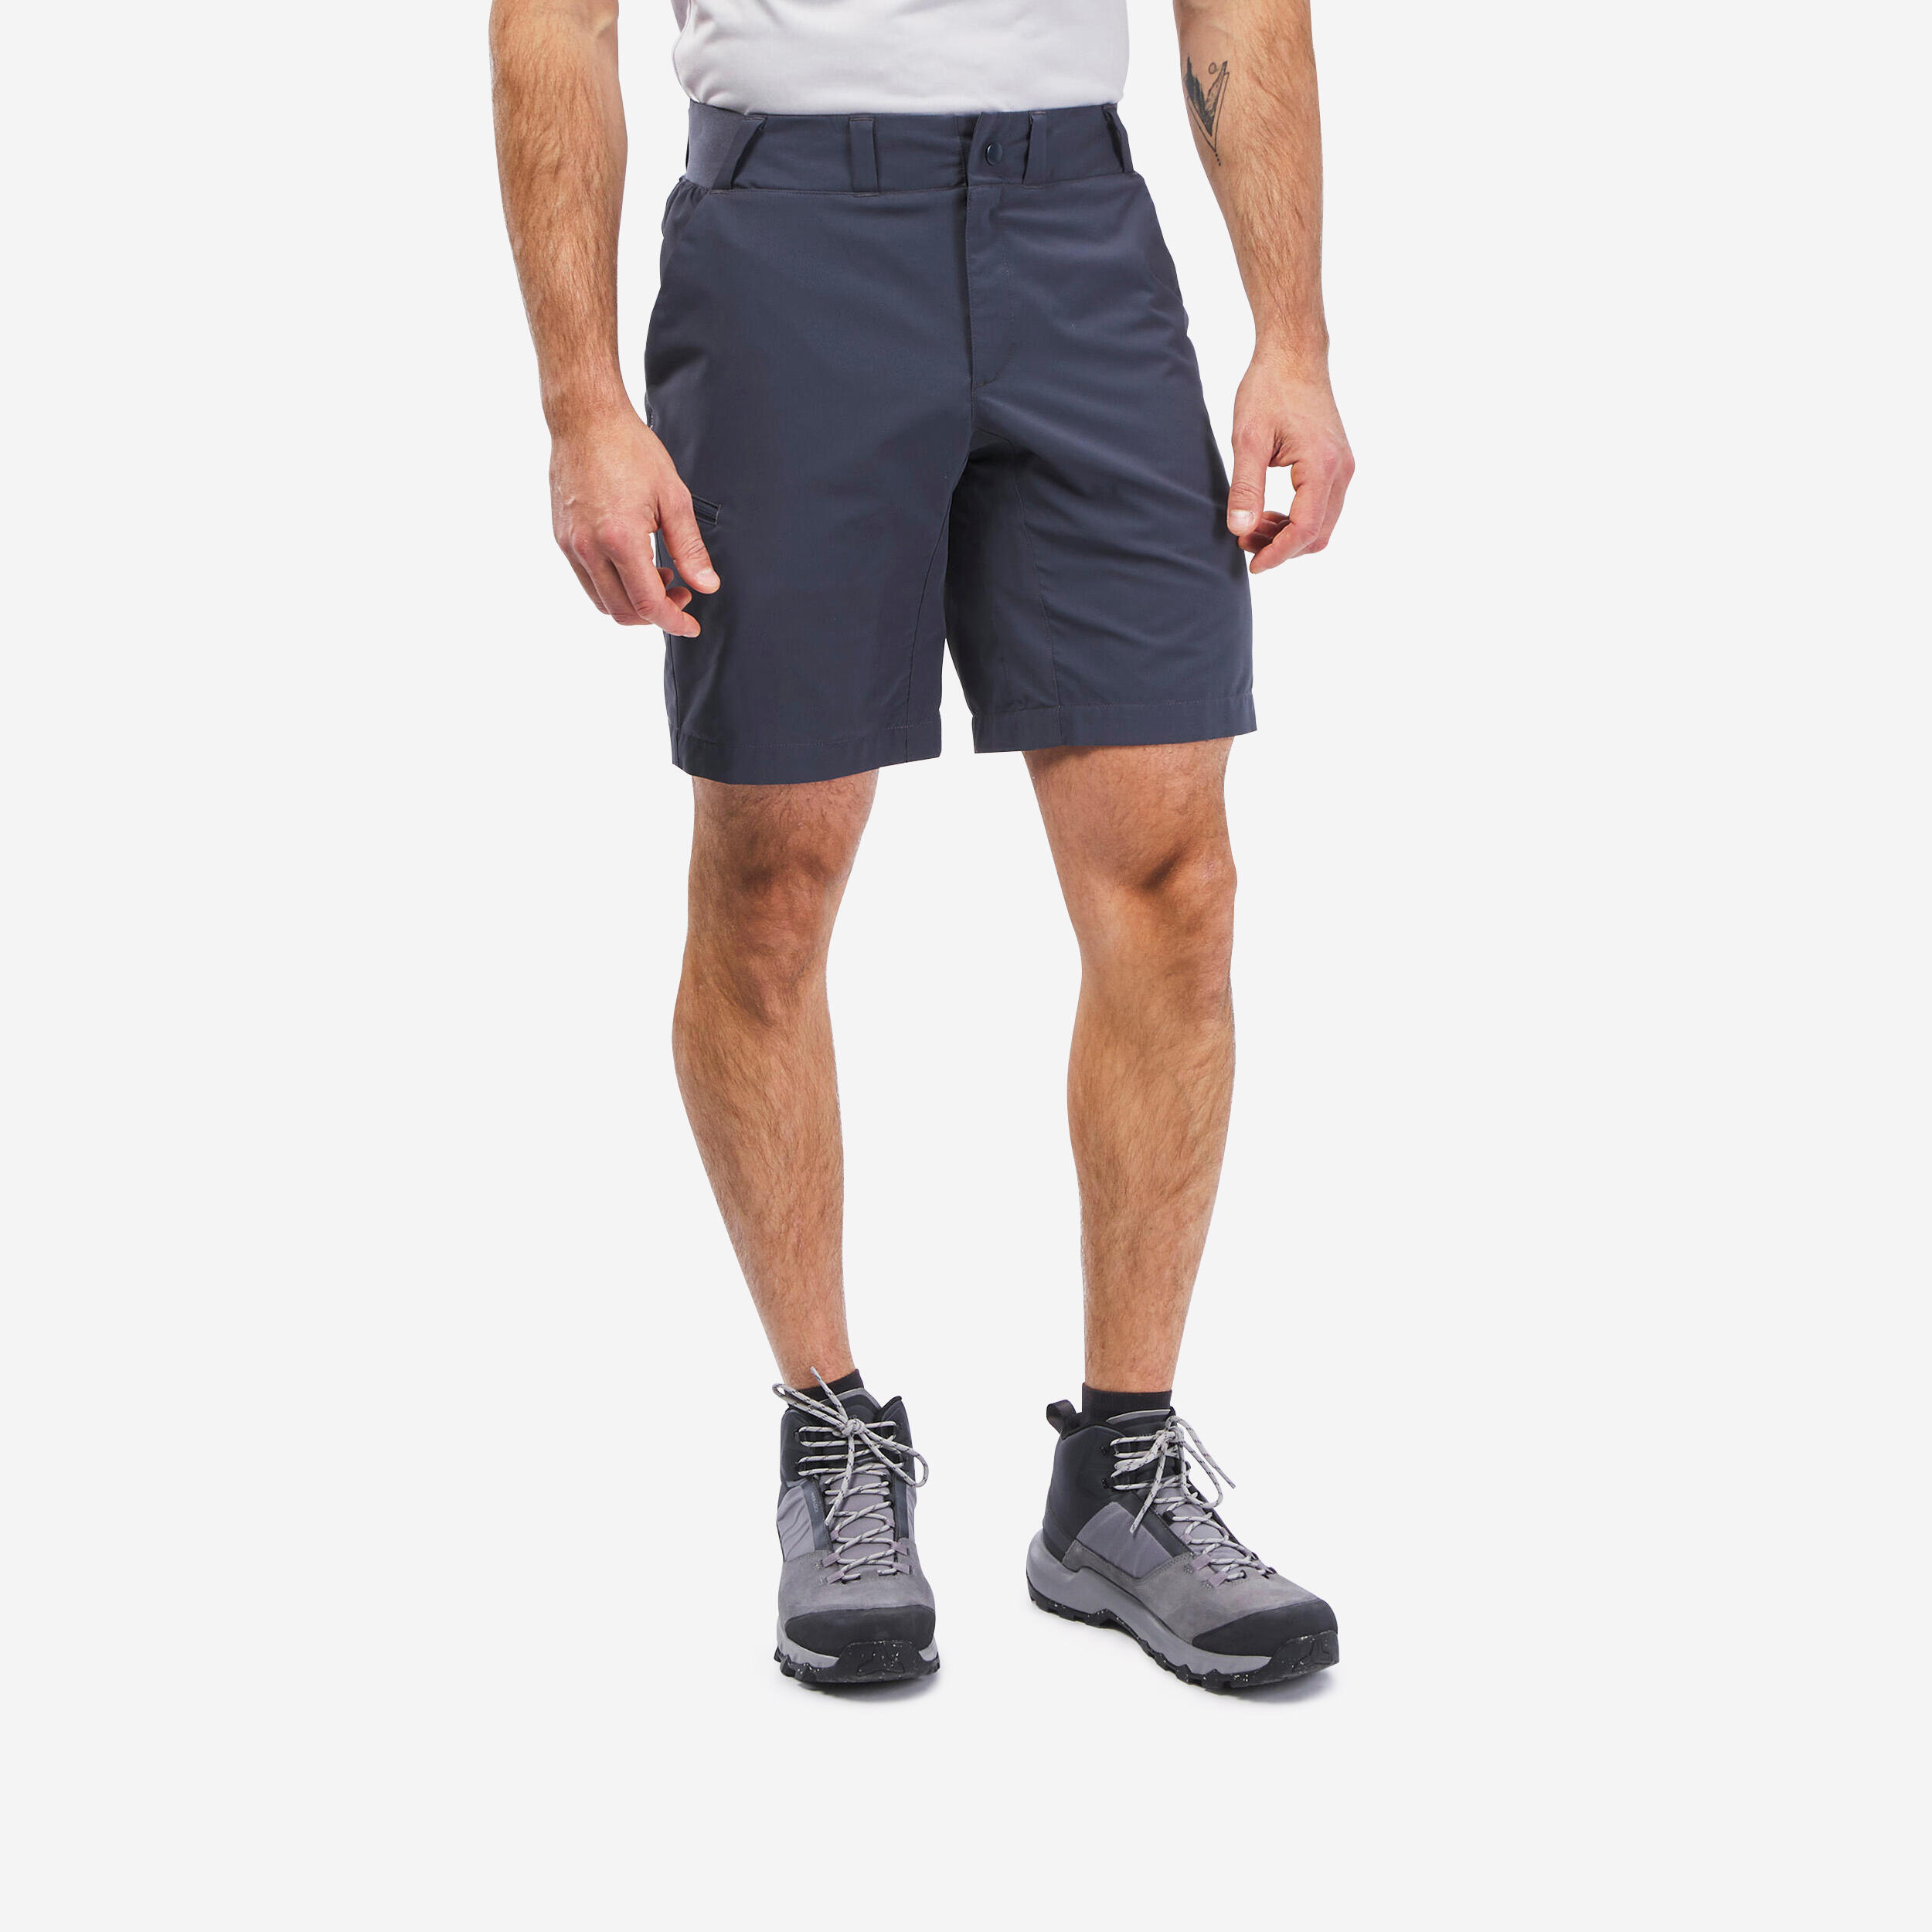 Men’s Hiking Shorts - MH 100 Blue